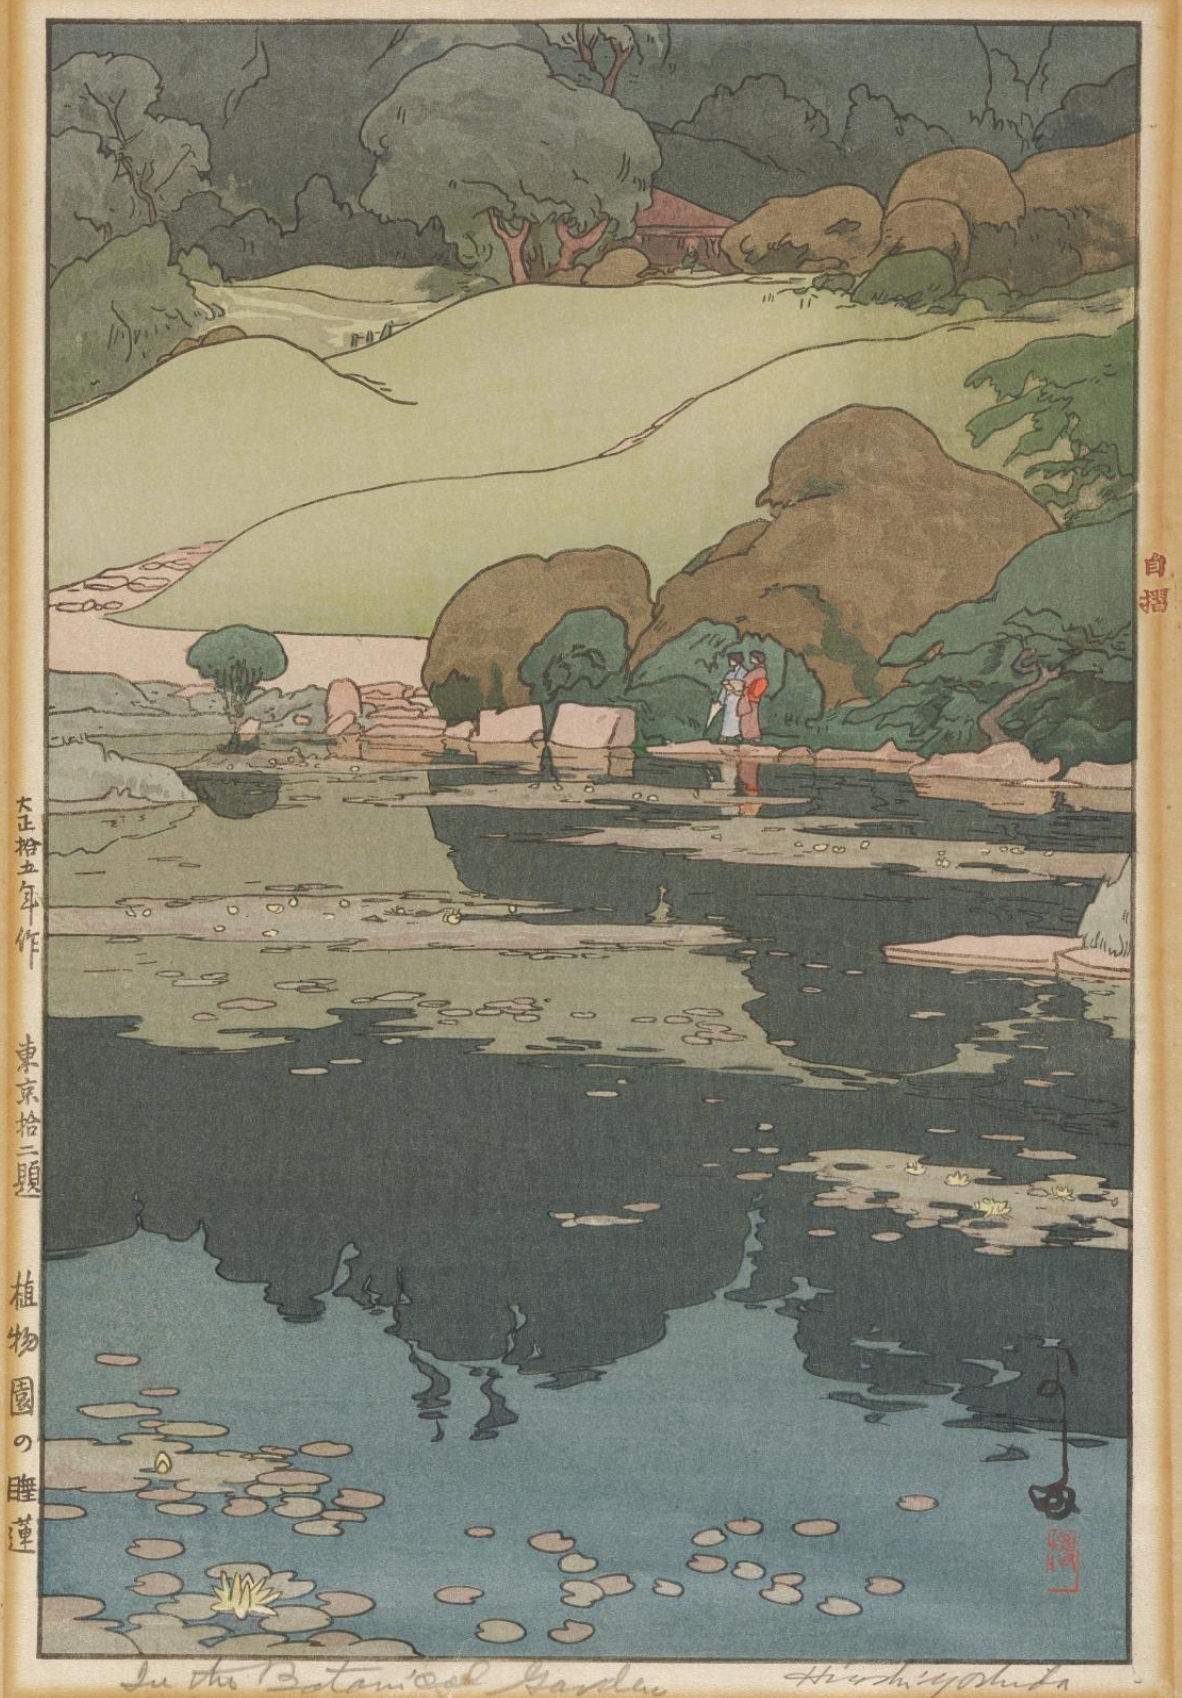 Hiroshi Yoshida “In the Botanical Garden” 1926 woodblock print